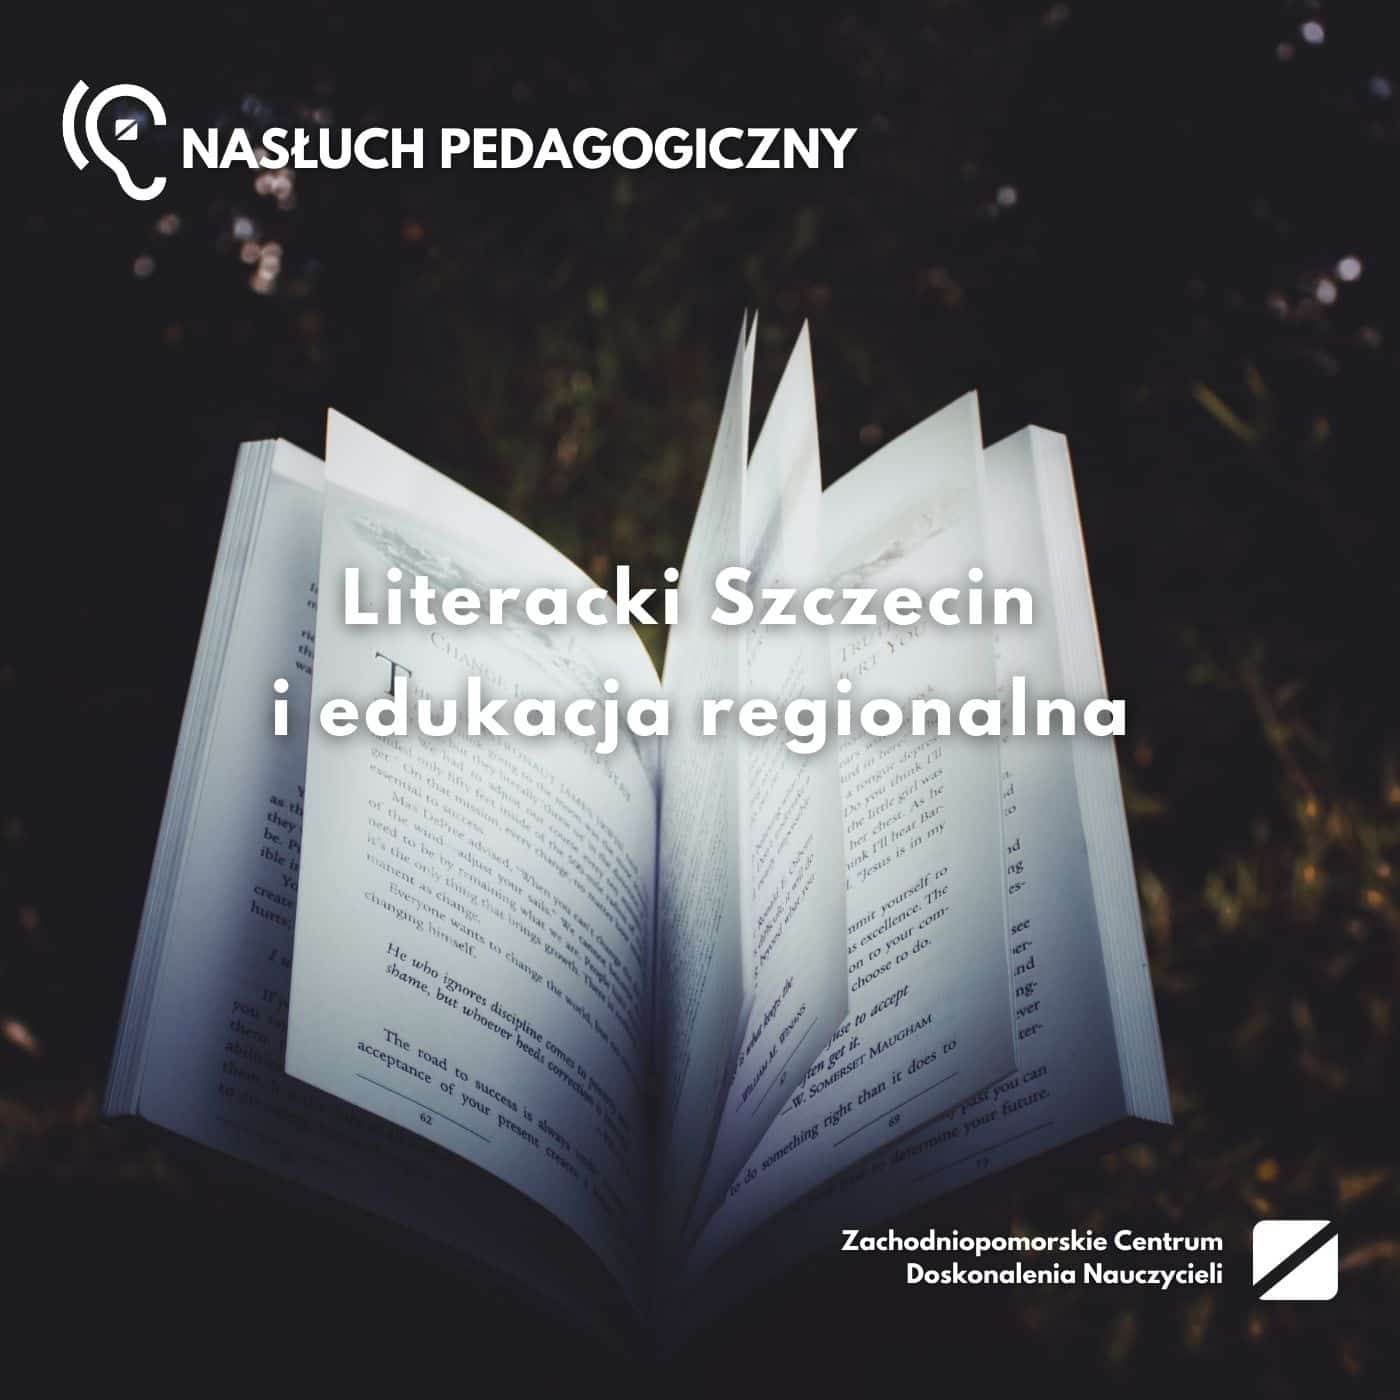 Nasłuch pedagogiczny: Literacki Szczecin i edukacja regionalna